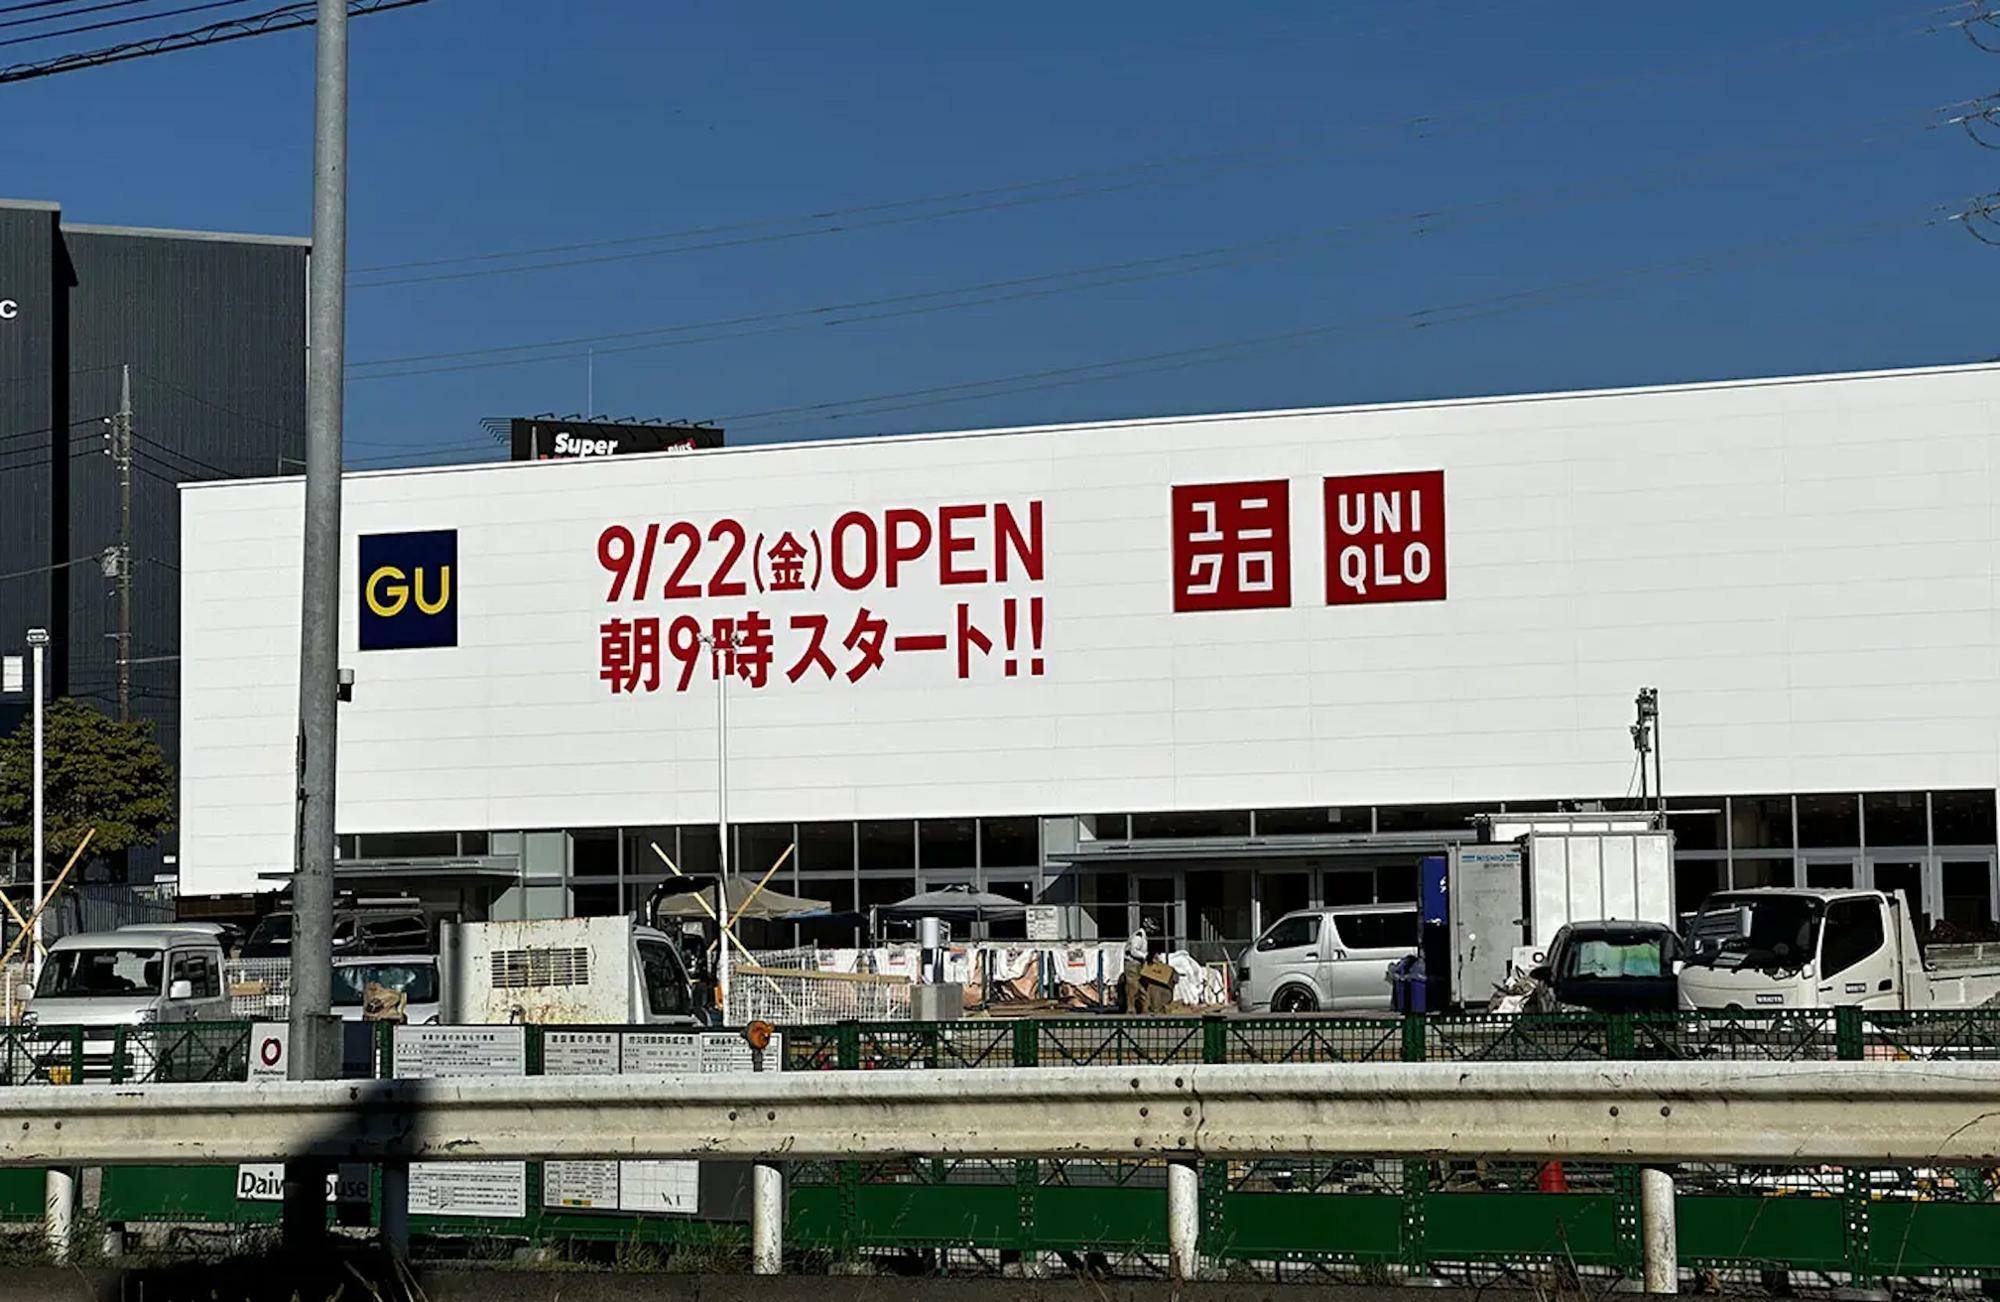 オープン予定の「ユニクロ・GUの岩槻店」